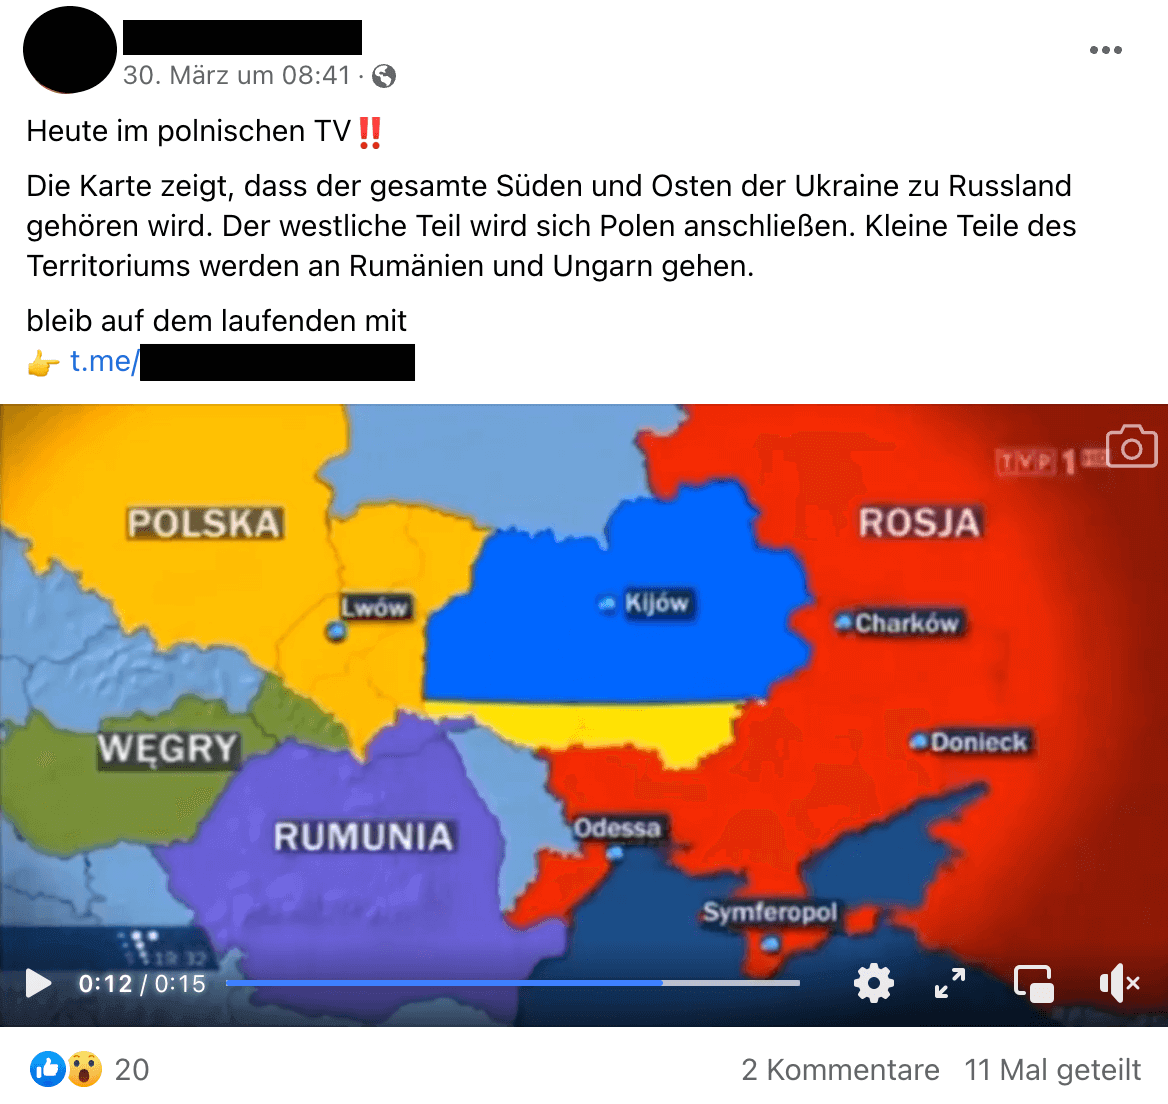 Online verbreitet sich die Behauptung, die Ukraine solle zwischen Polen, Rumänien, Ungarn und Russland aufgeteilt werden. Das ist falsch.